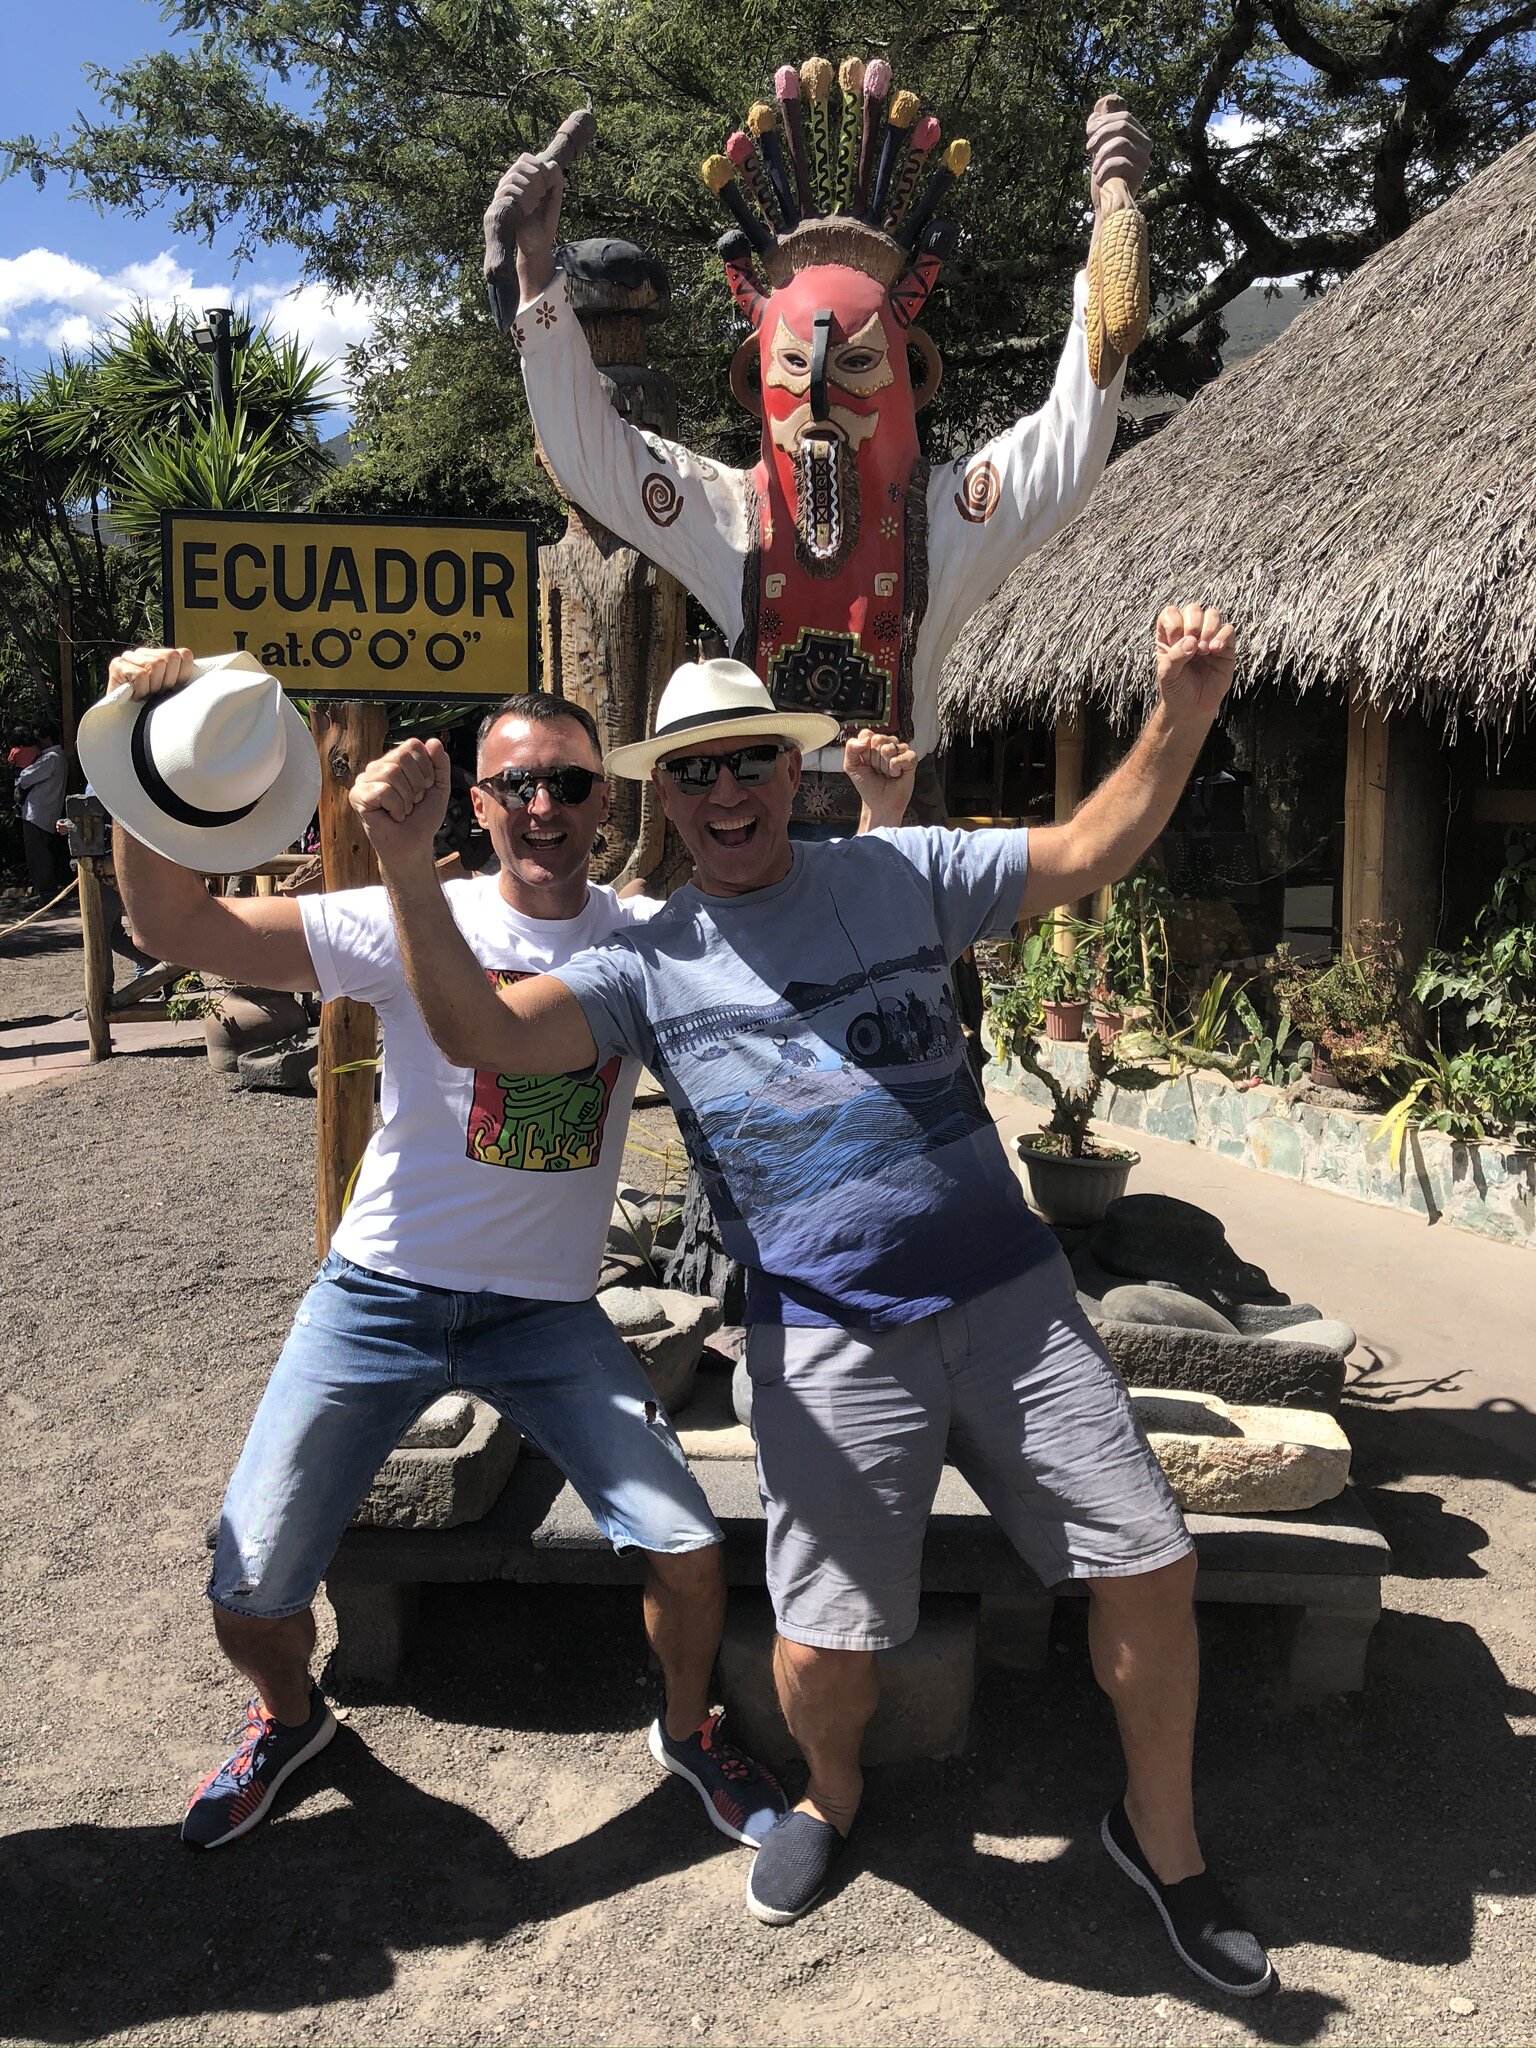 Ecuator-ecuador-gay-travel-2020.JPG